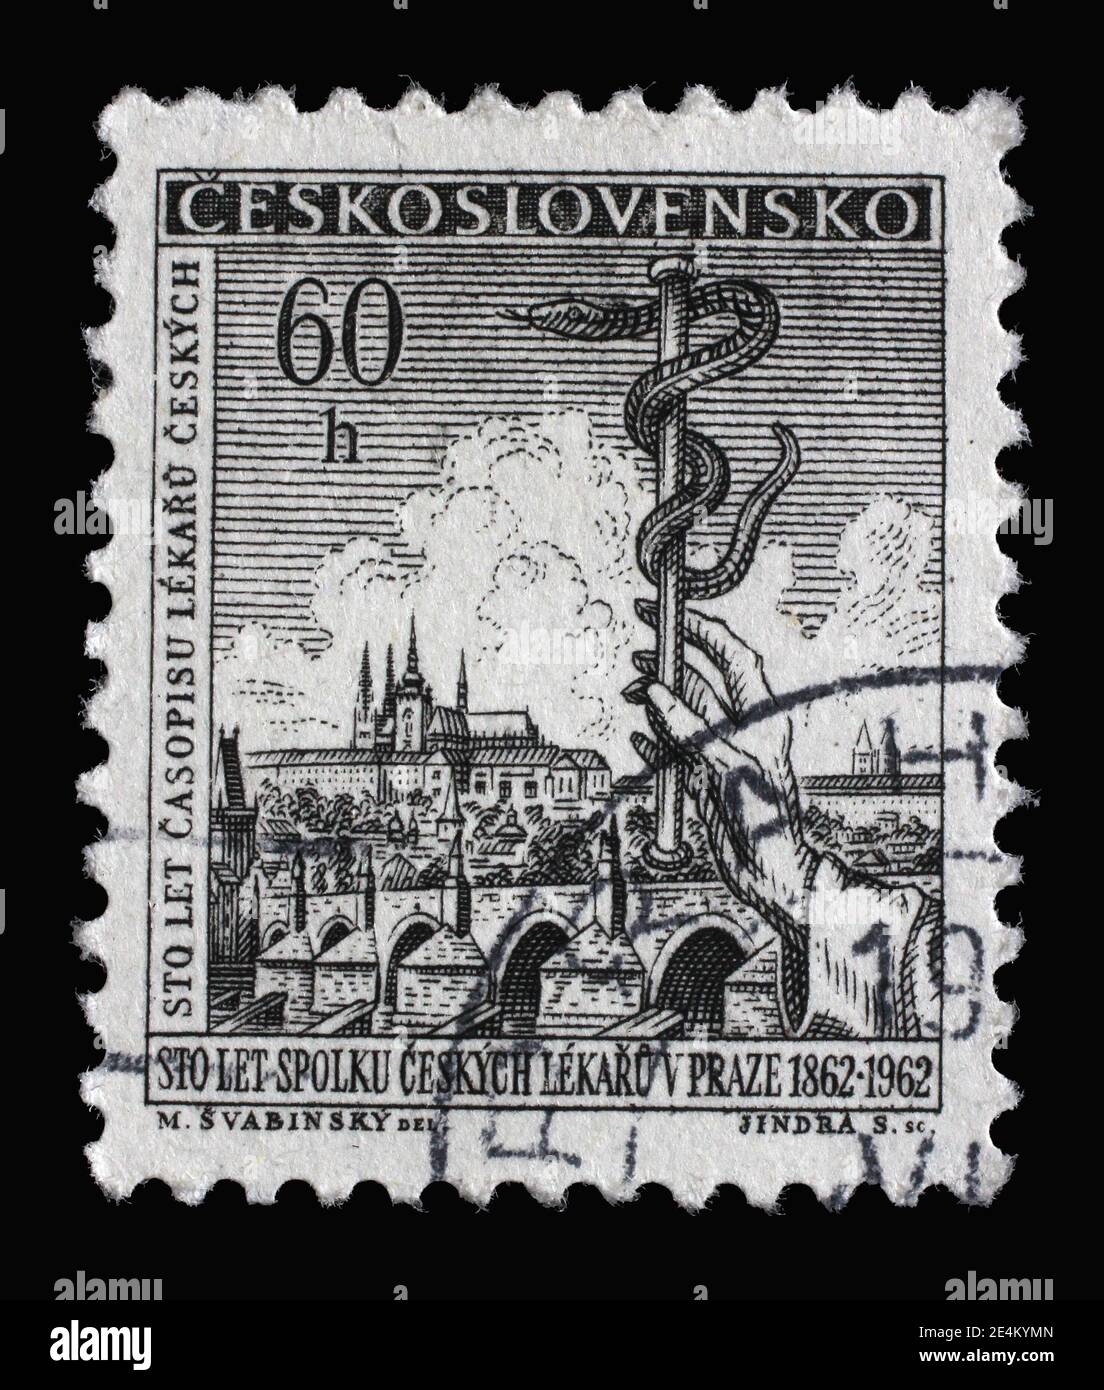 Timbre imprimé en Tchécoslovaquie dédié au 100e anniversaire de l'Association médicale tchèque, vers 1962 Banque D'Images